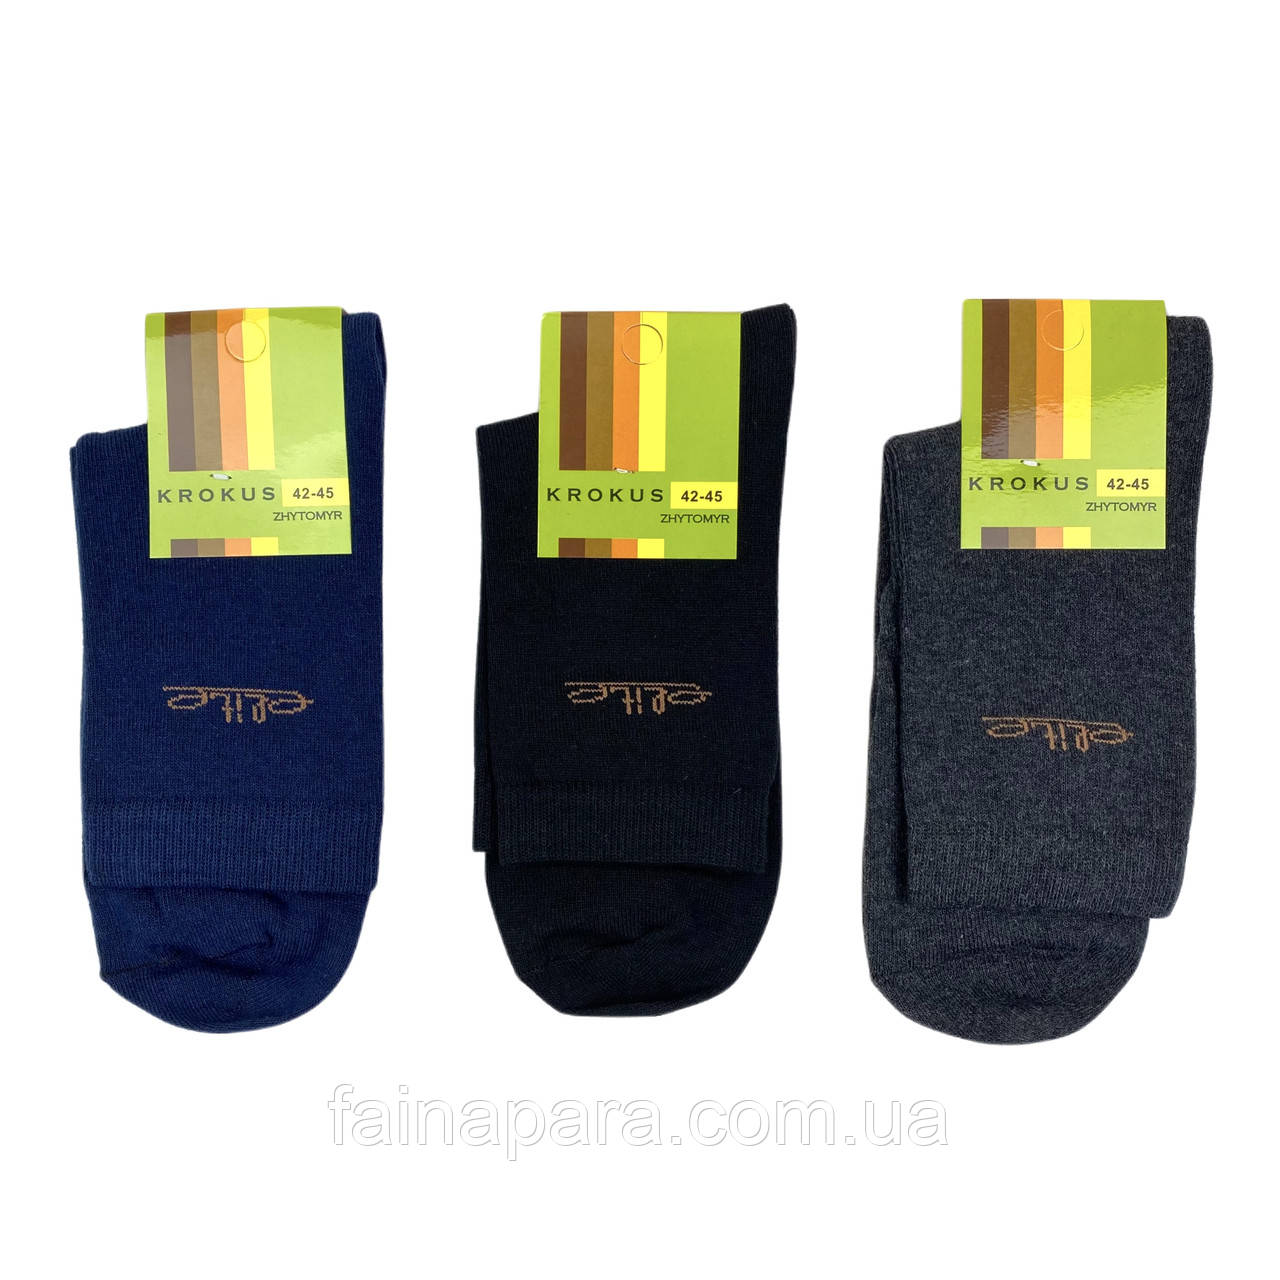 Чоловічі високі бавовняні шкарпетки Krokus упаковками 39-42